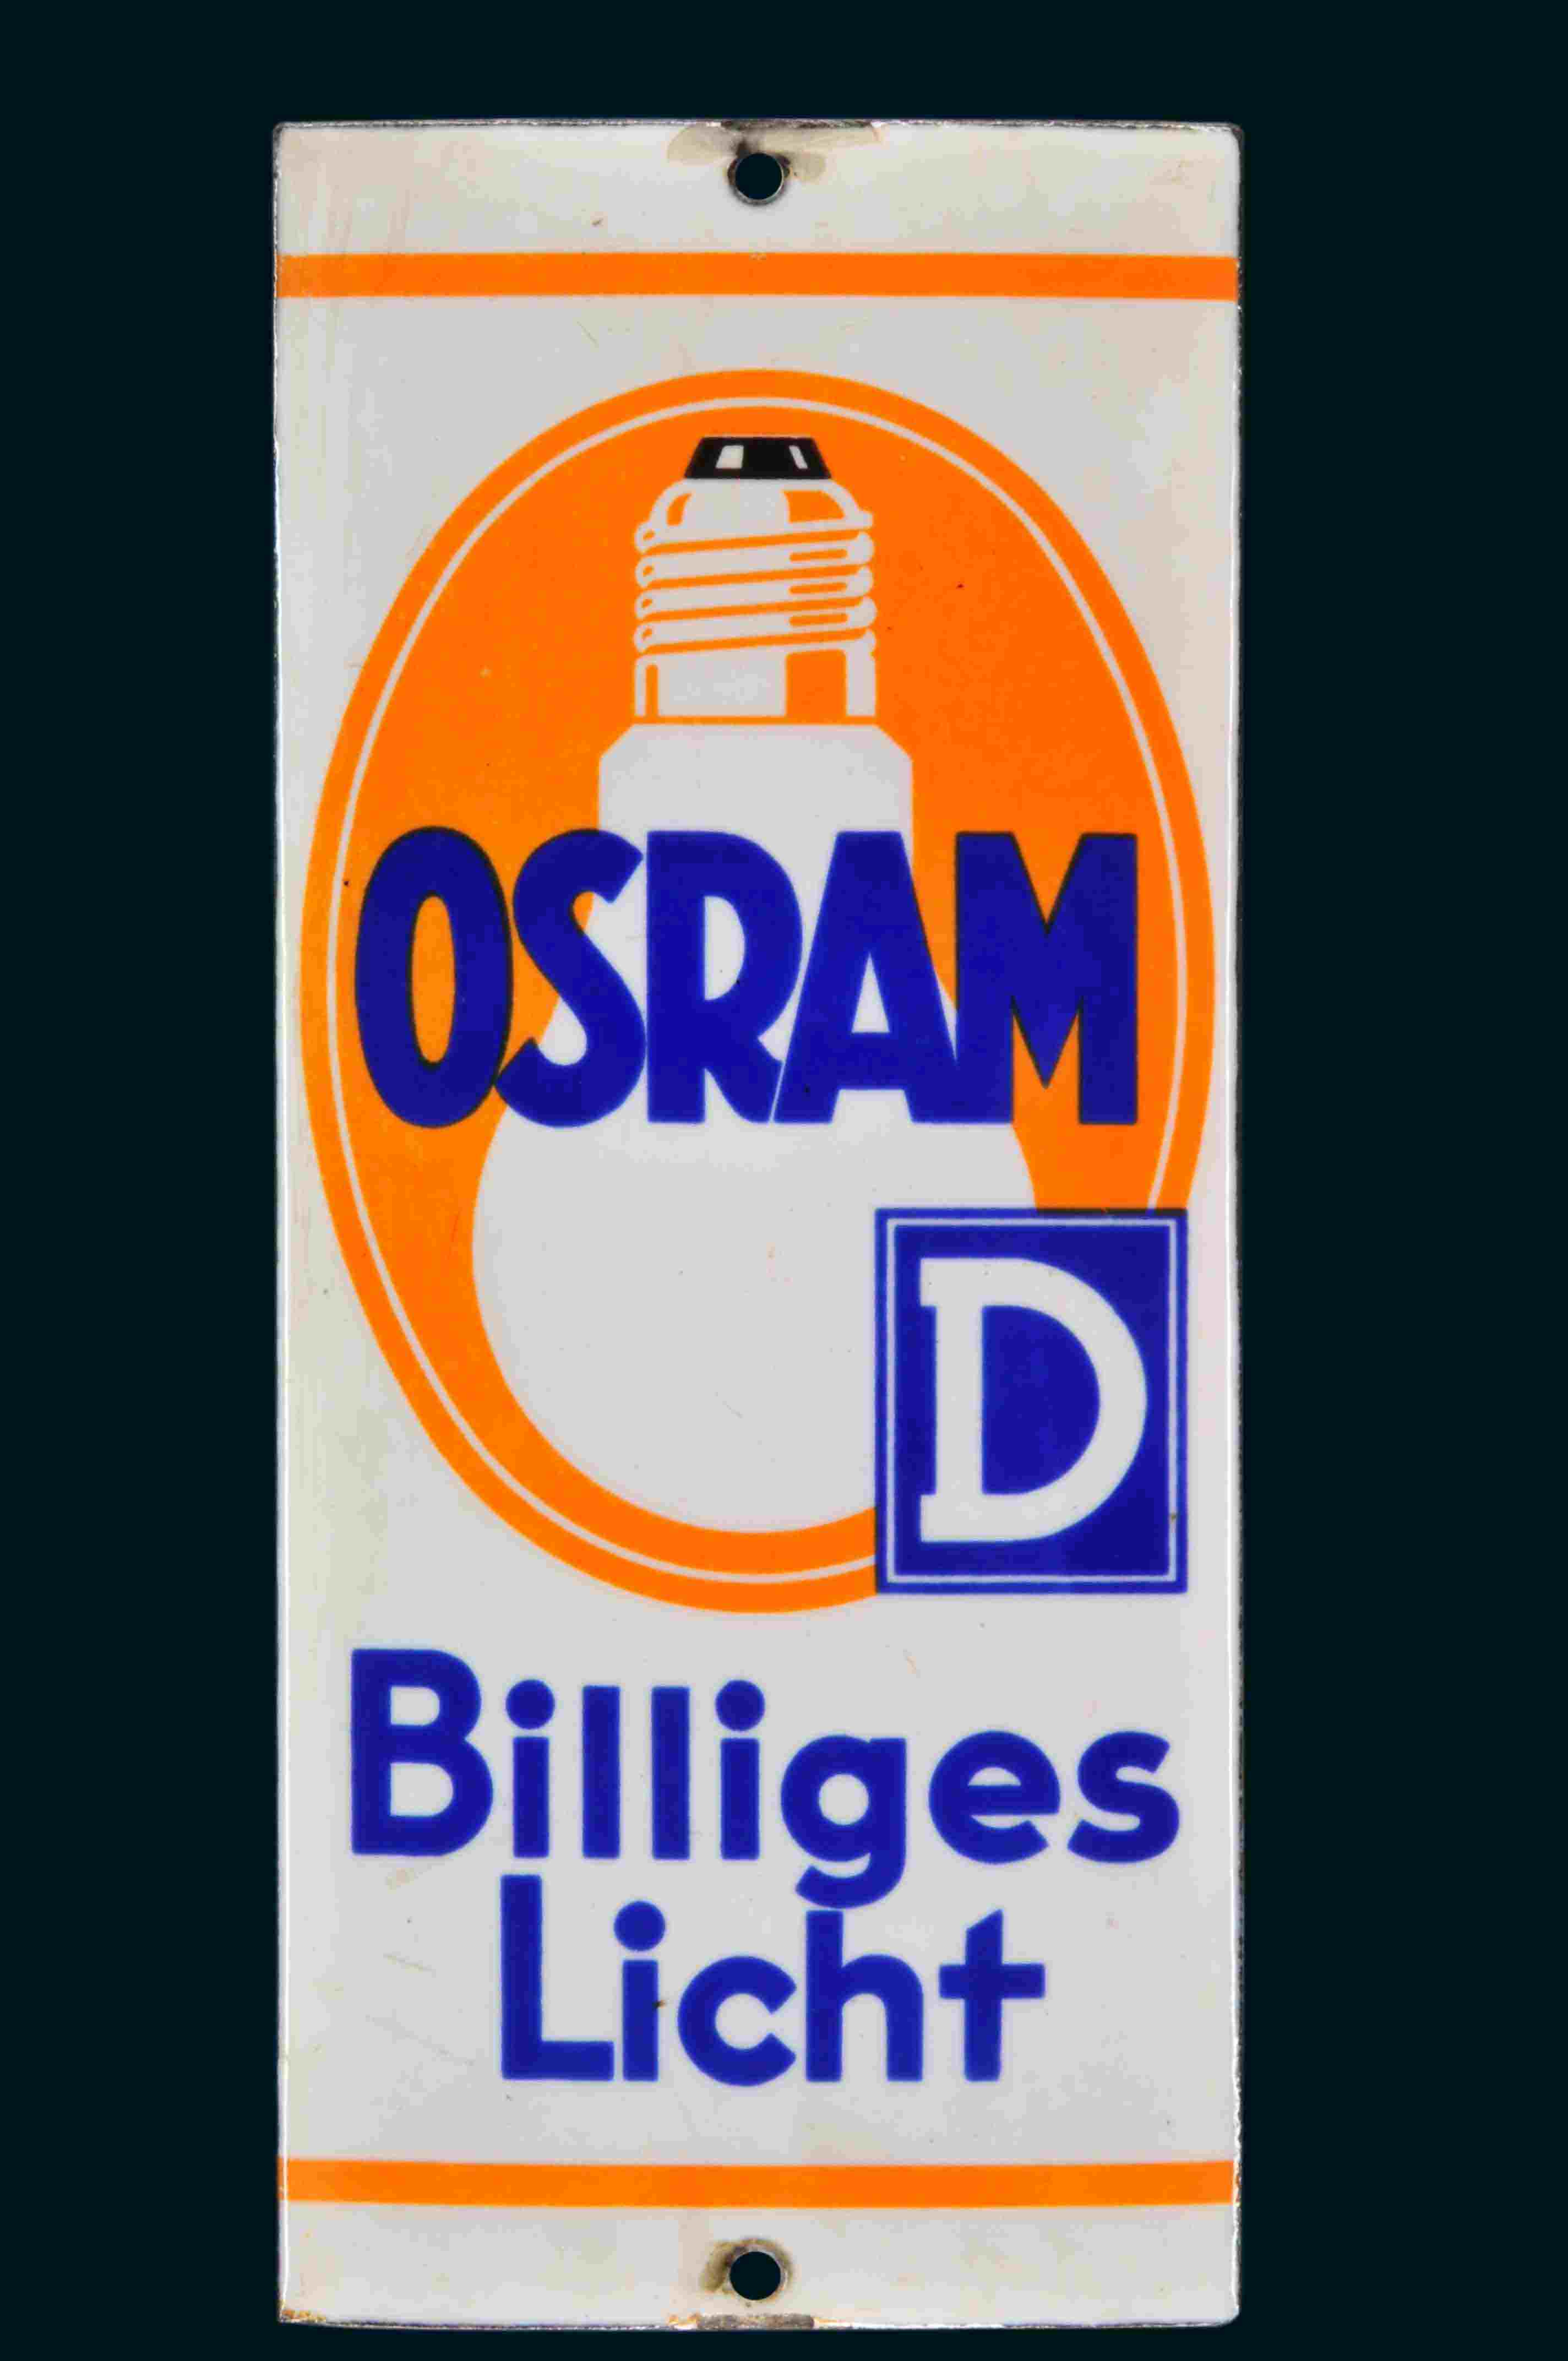 Osram "D" Billiges Licht 